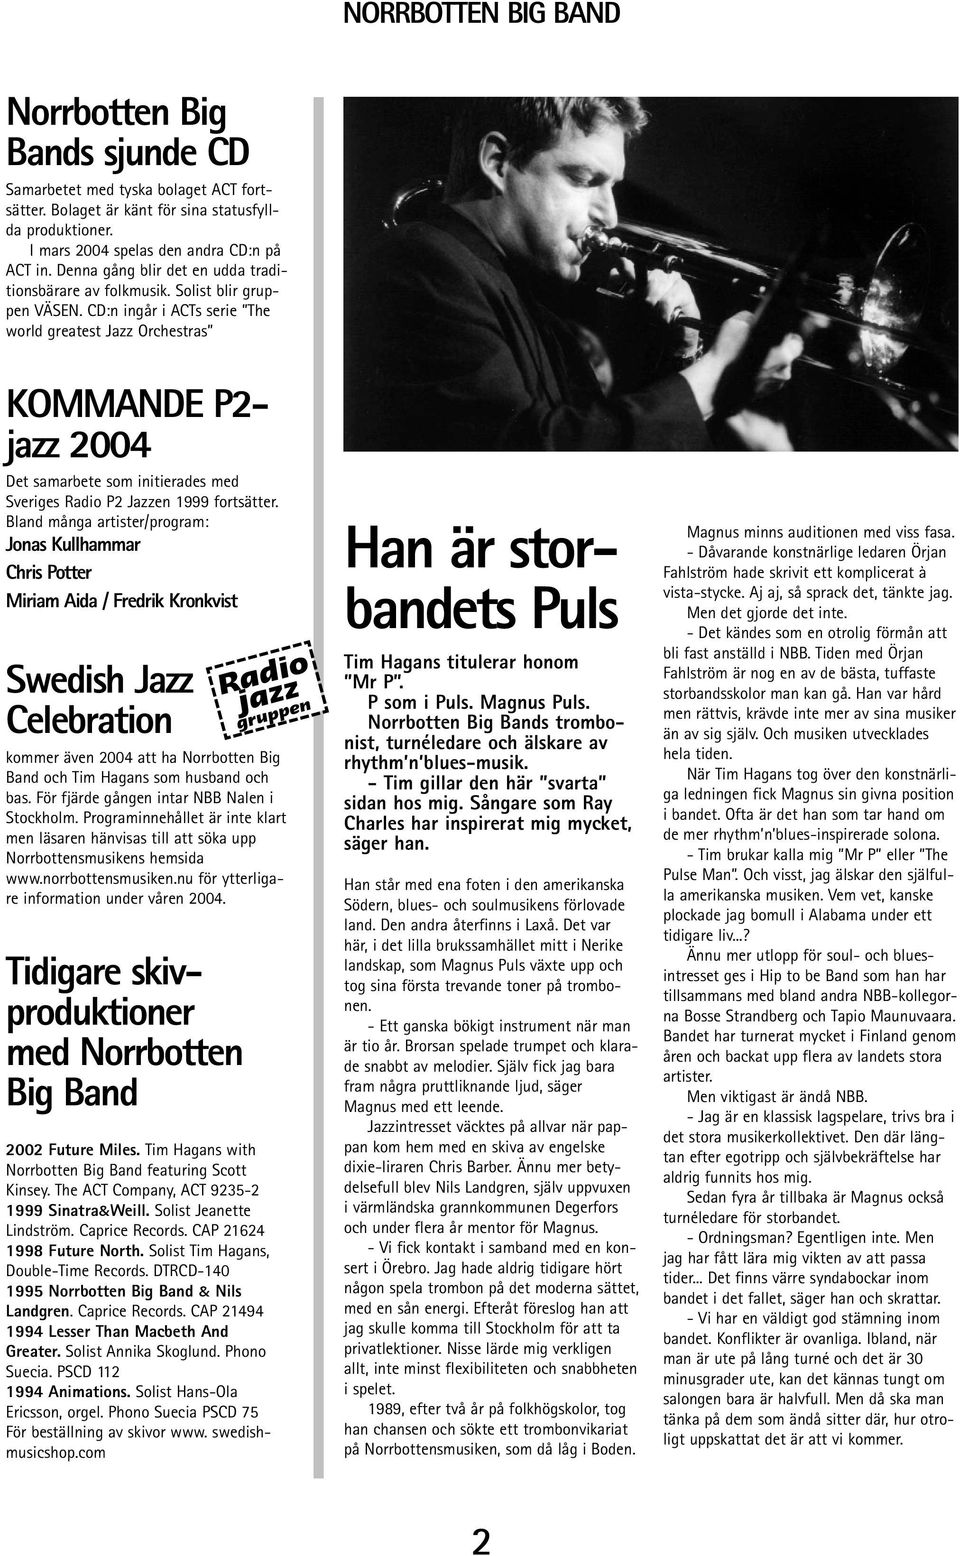 CD:n ingår i ACTs serie The world greatest Jazz Orchestras KOMMANDE P2- jazz 2004 Det samarbete som initierades med Sveriges Radio P2 Jazzen 1999 fortsätter.